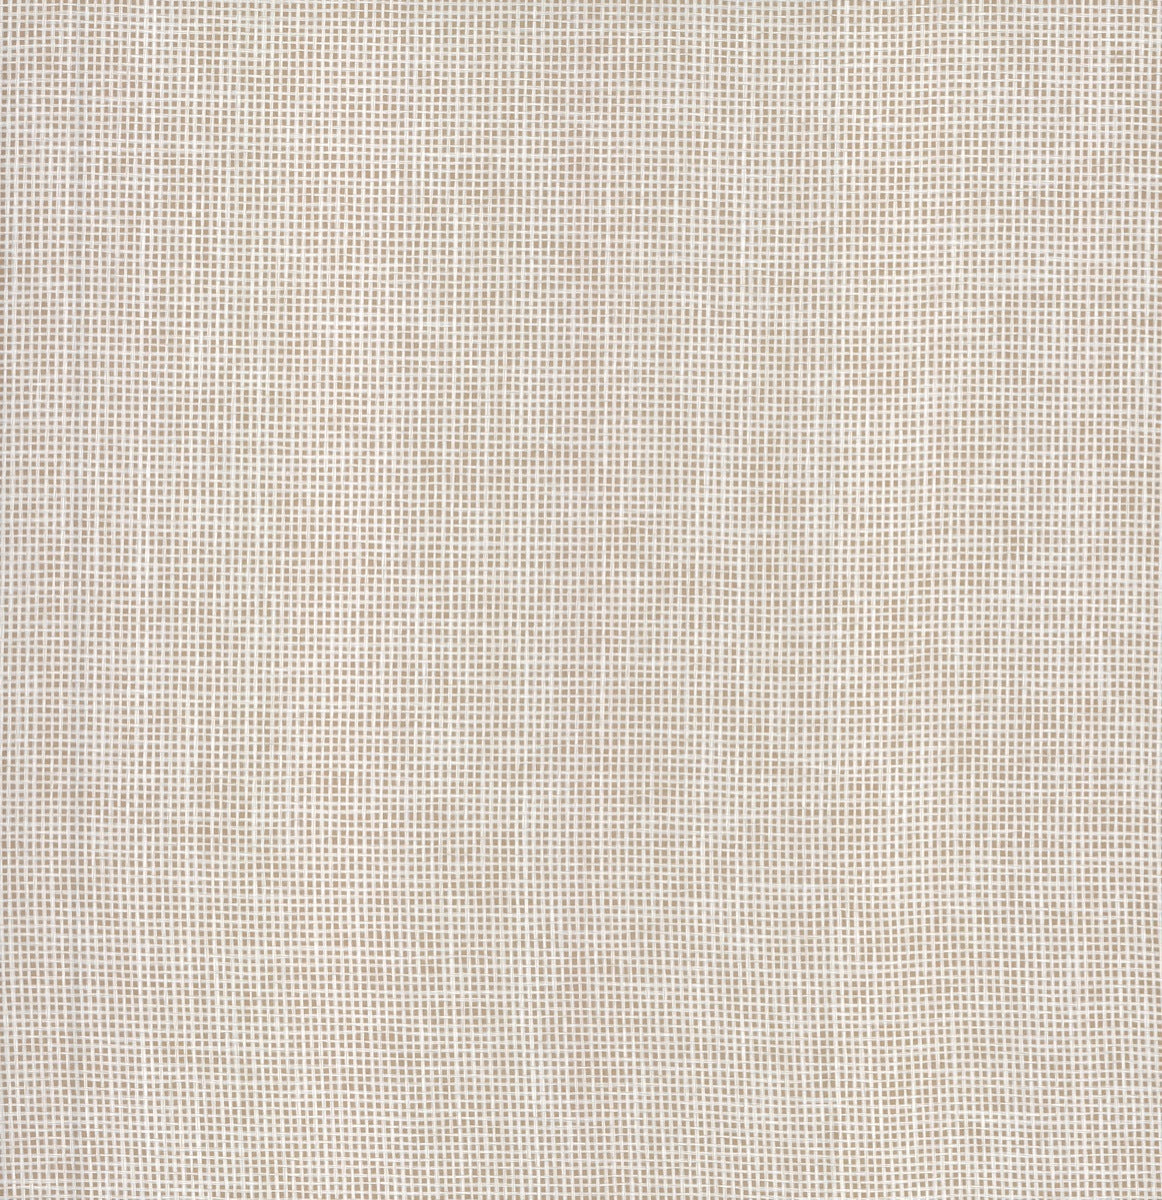 Waffleweave - Camouflage White